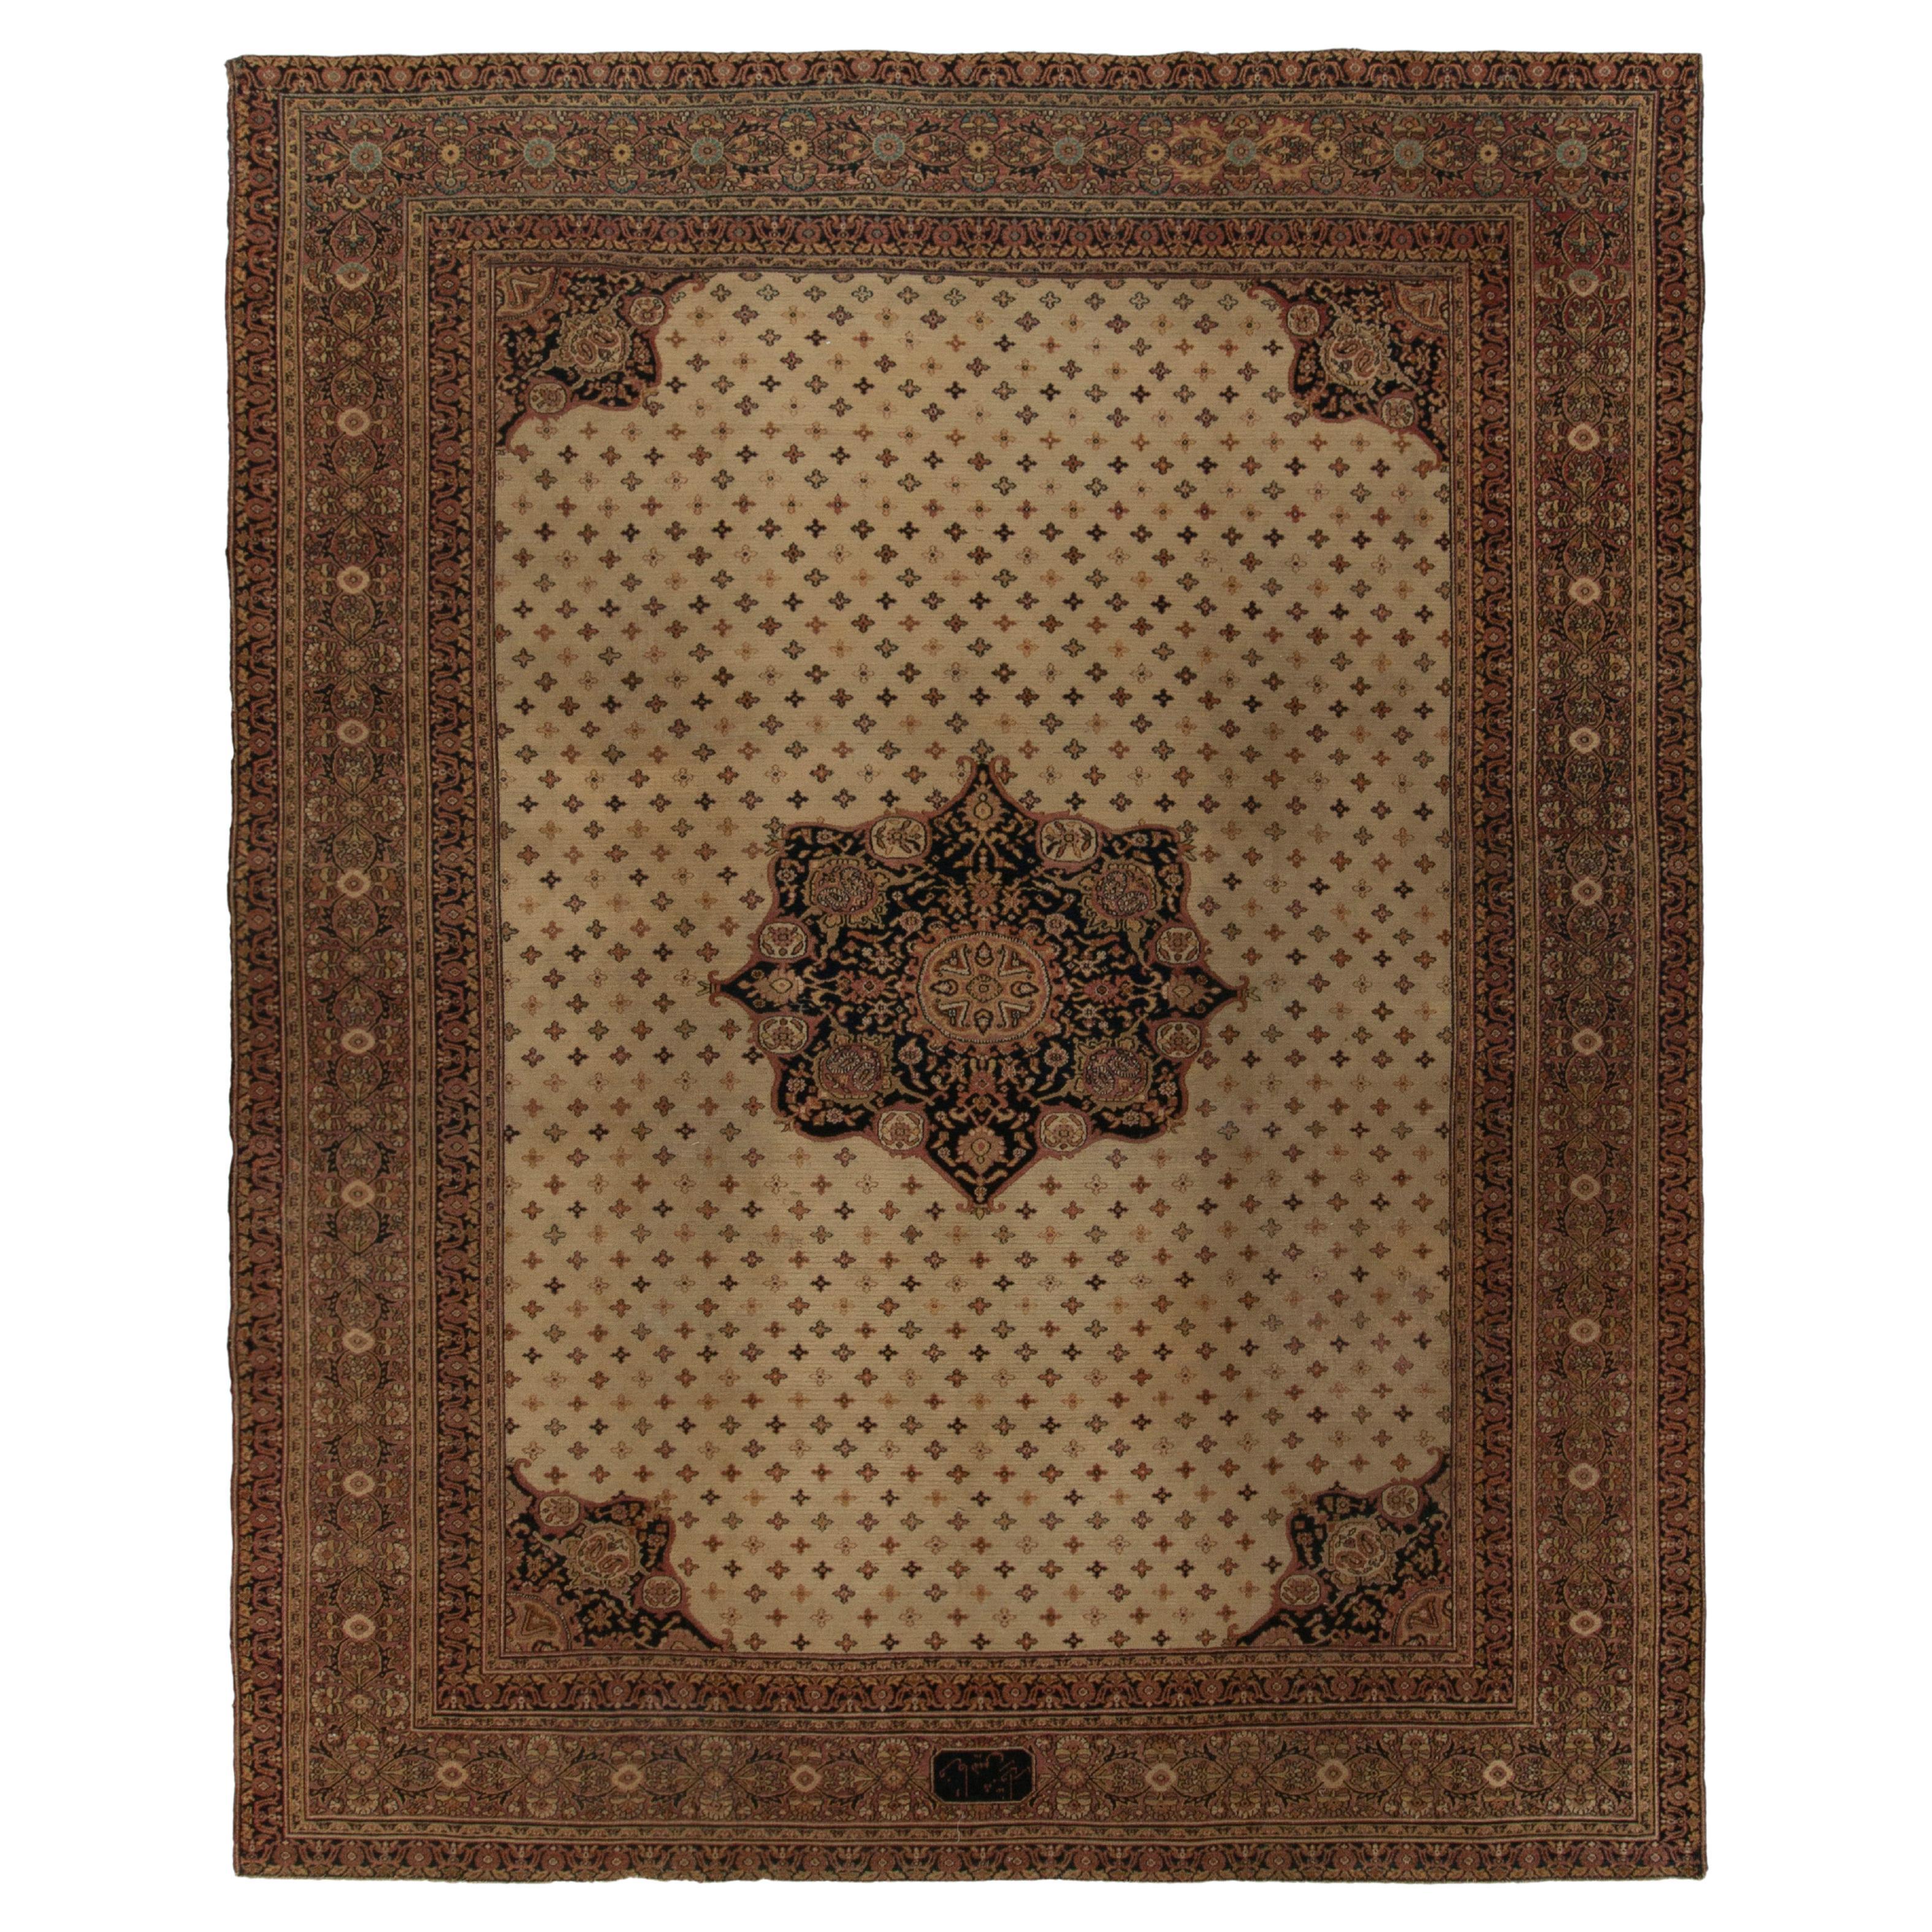 Antiker antiker Doroksh-Teppich in Beige und Braun mit floralem Medaillonmuster von Teppich & Kelim